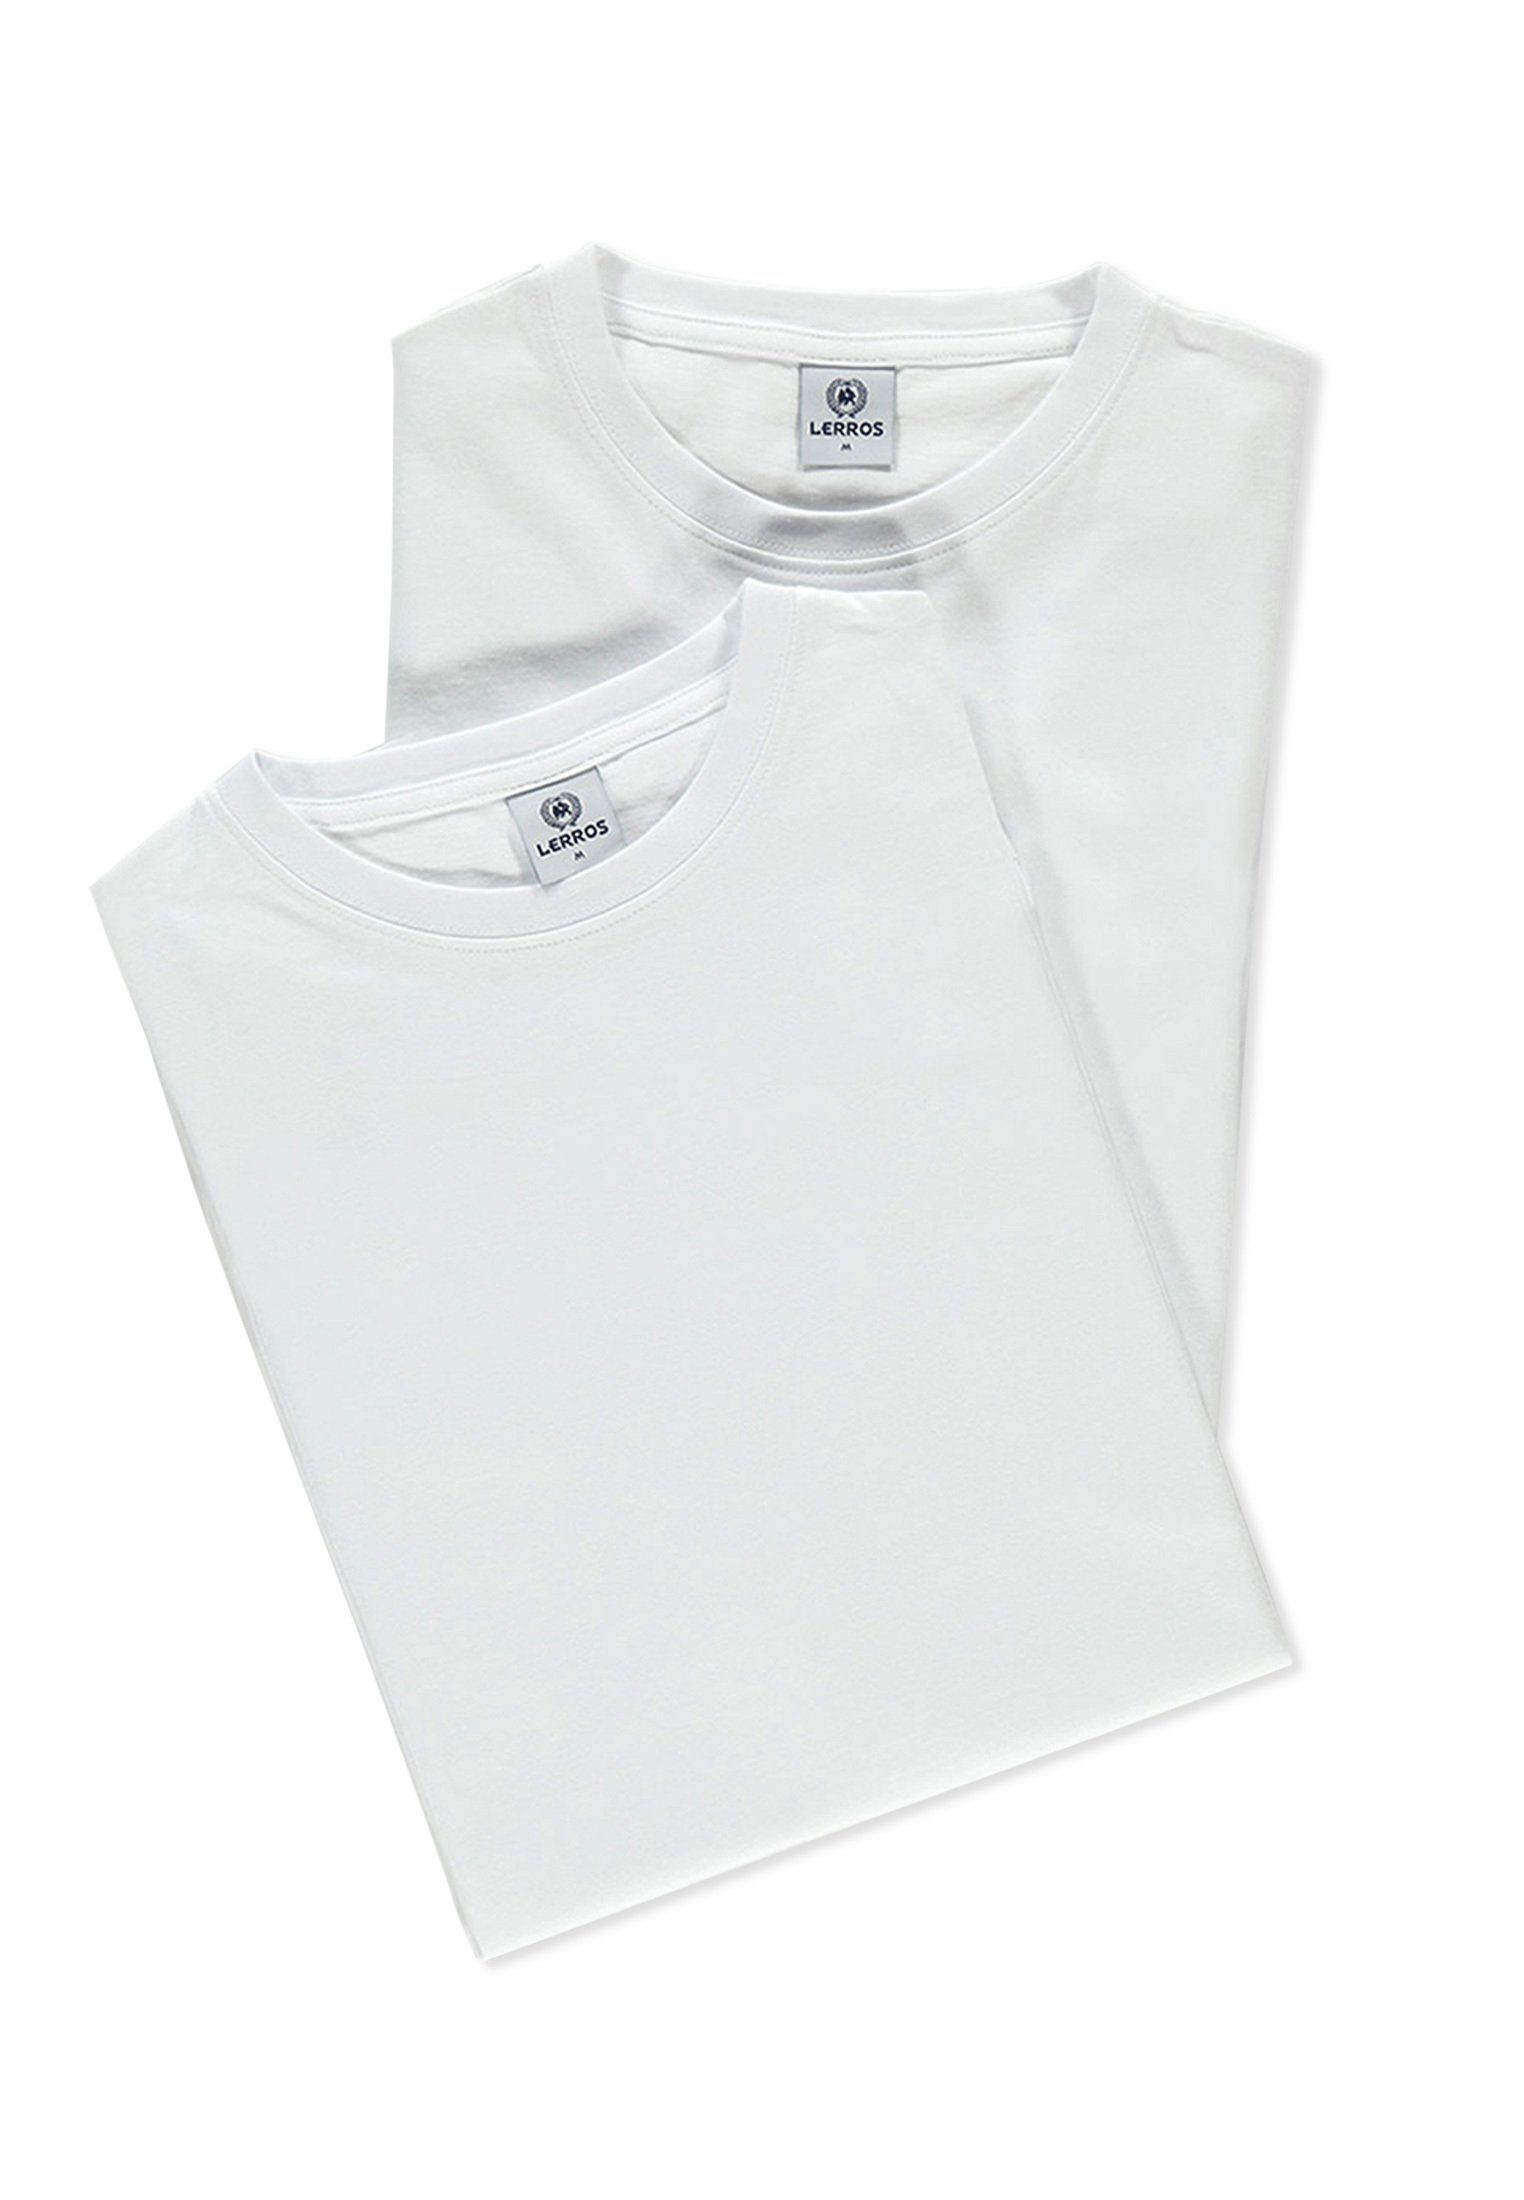 LERROS T-Shirt WHITE Doppelpack Premium Baumwollqualität Rundhals T-Shirt LERROS in